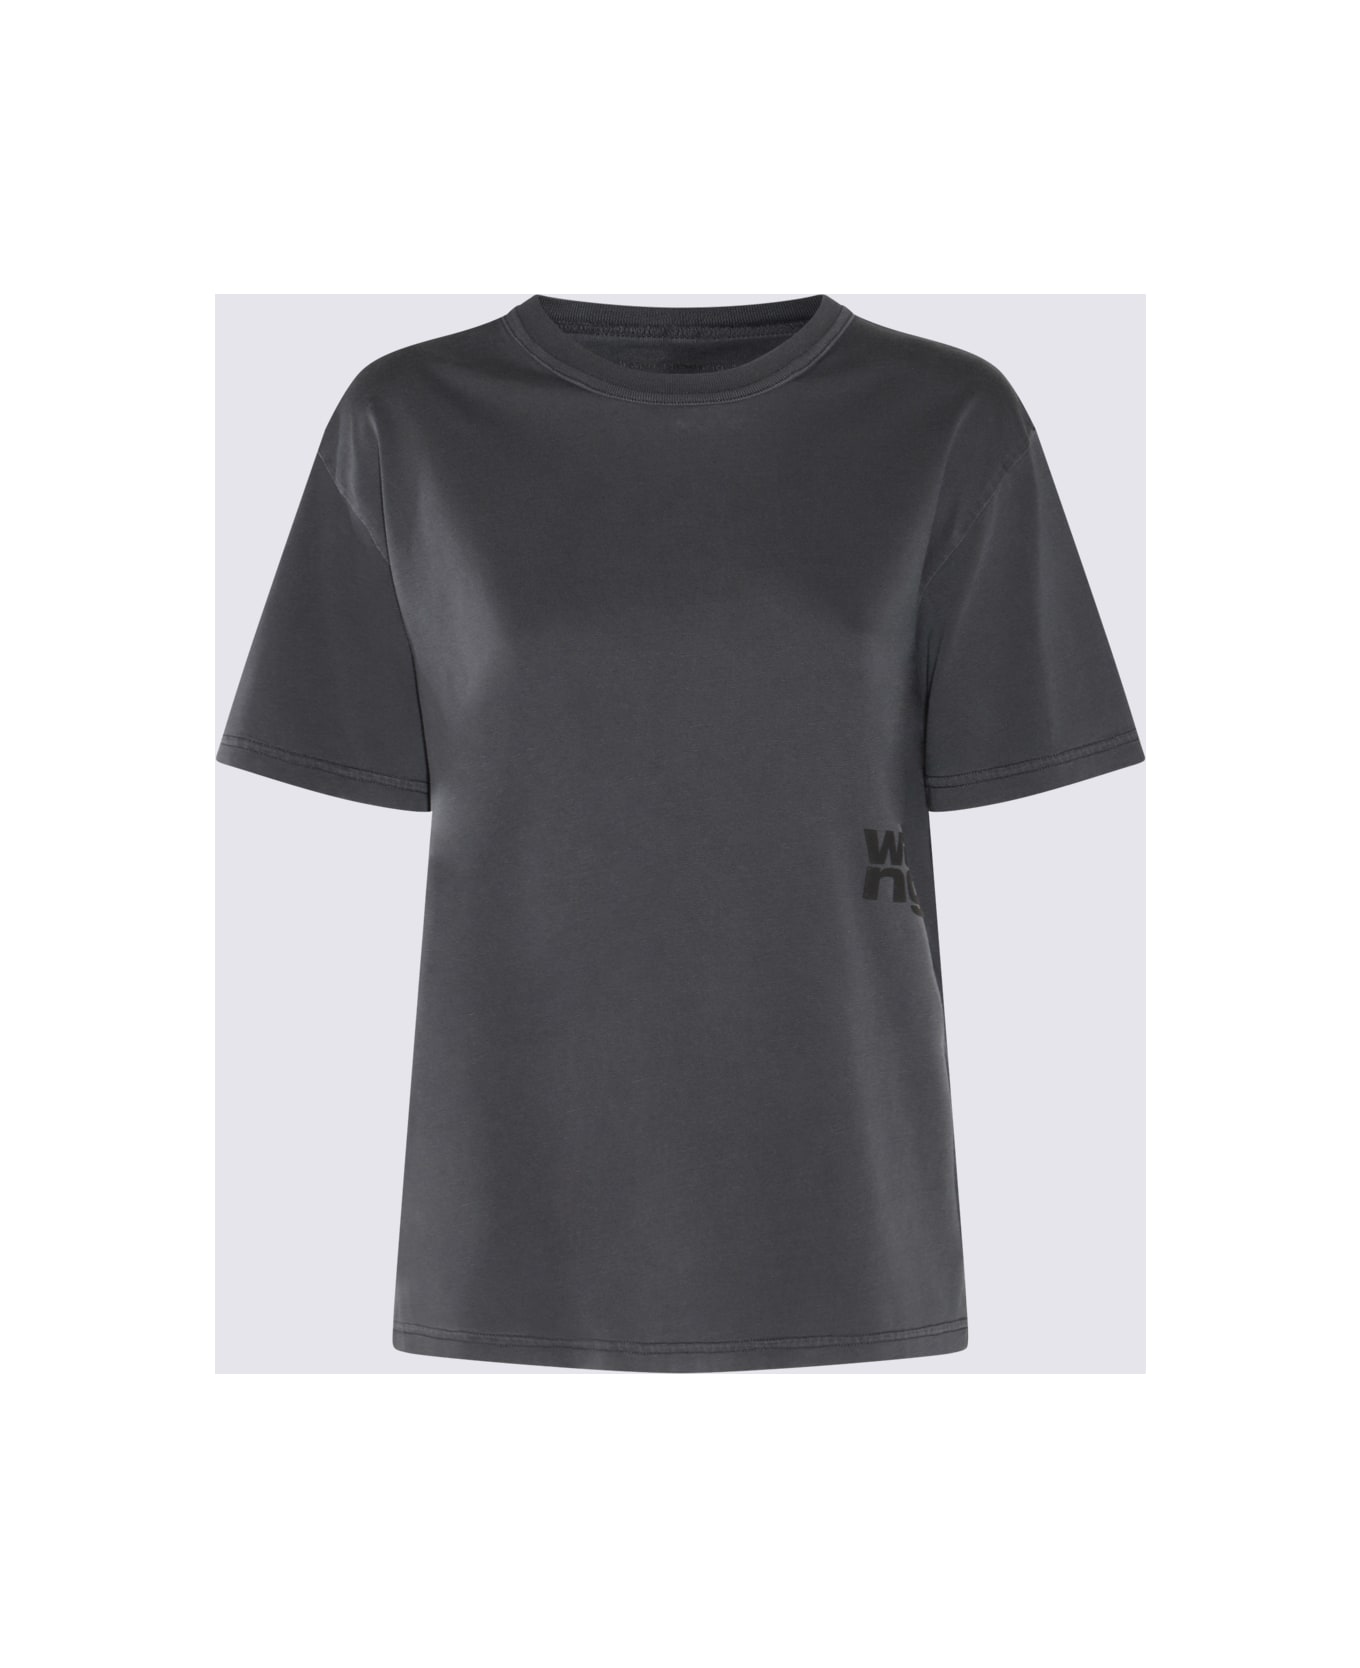 Alexander Wang Dark Grey Cotton T-shirt - SOFT OBSIDIAN